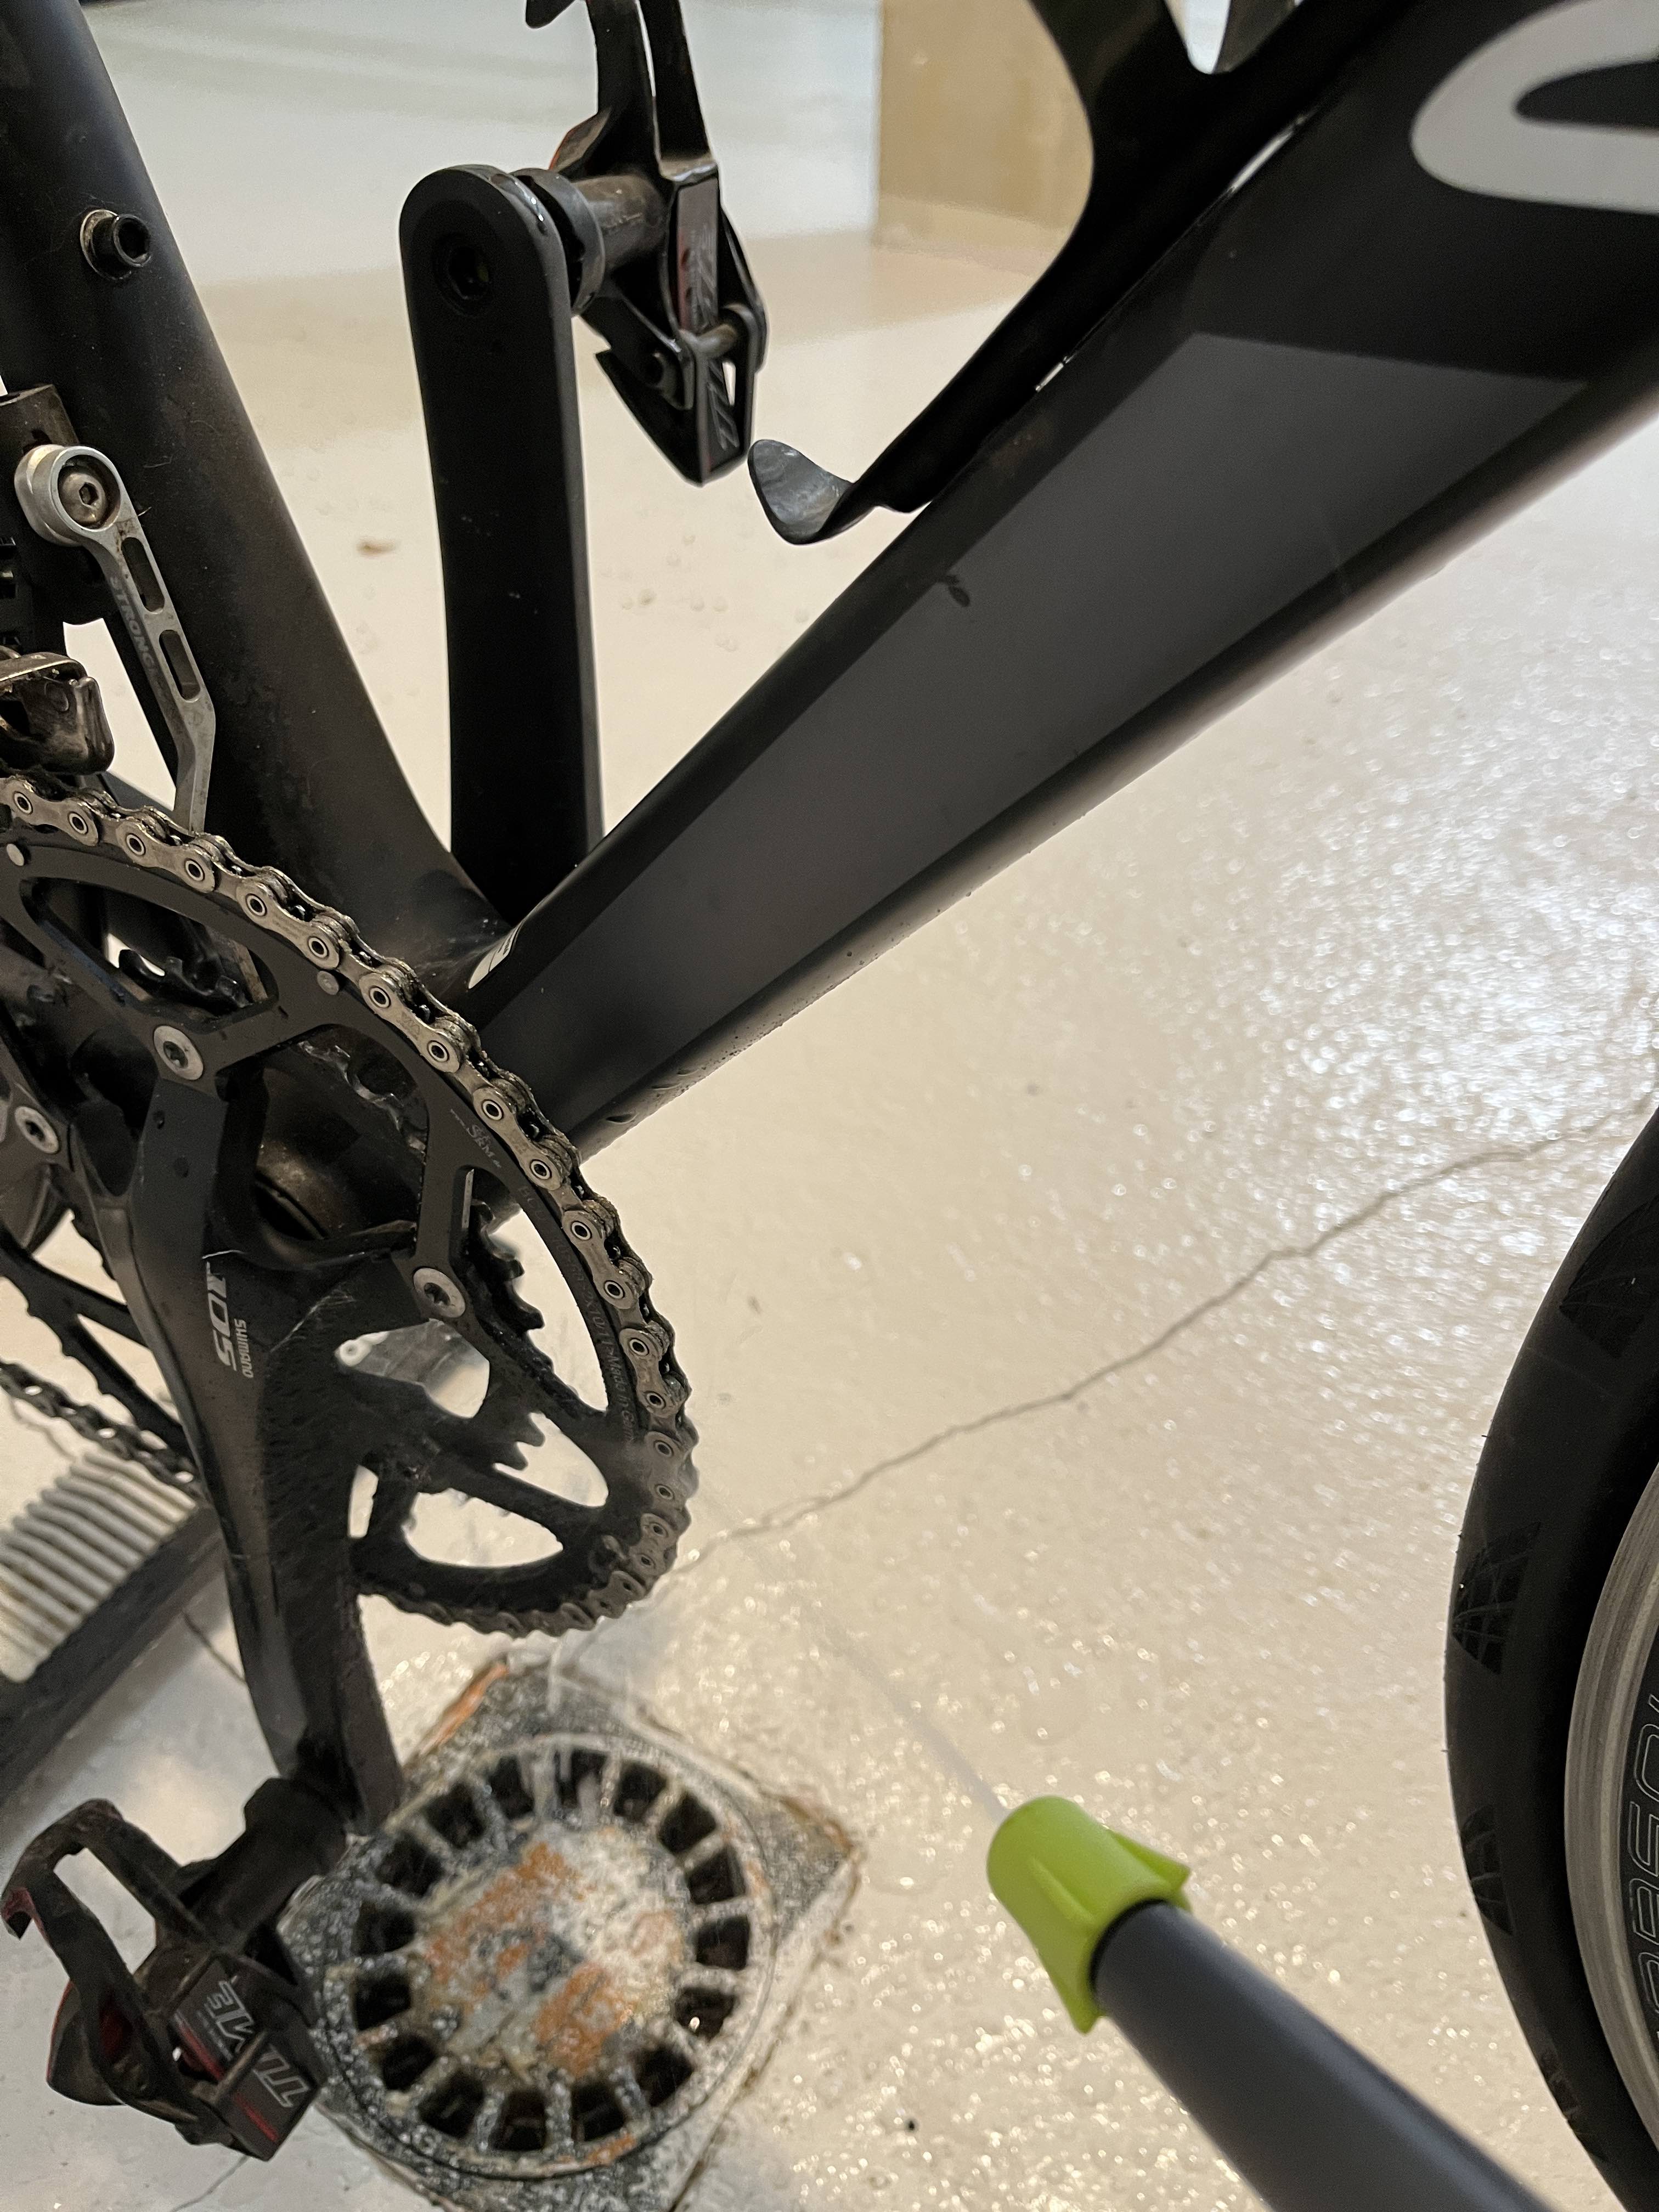 Test du lubrifiant Squirtlube - Matos vélo, actualités vélo de route et  tests de matériel cyclisme